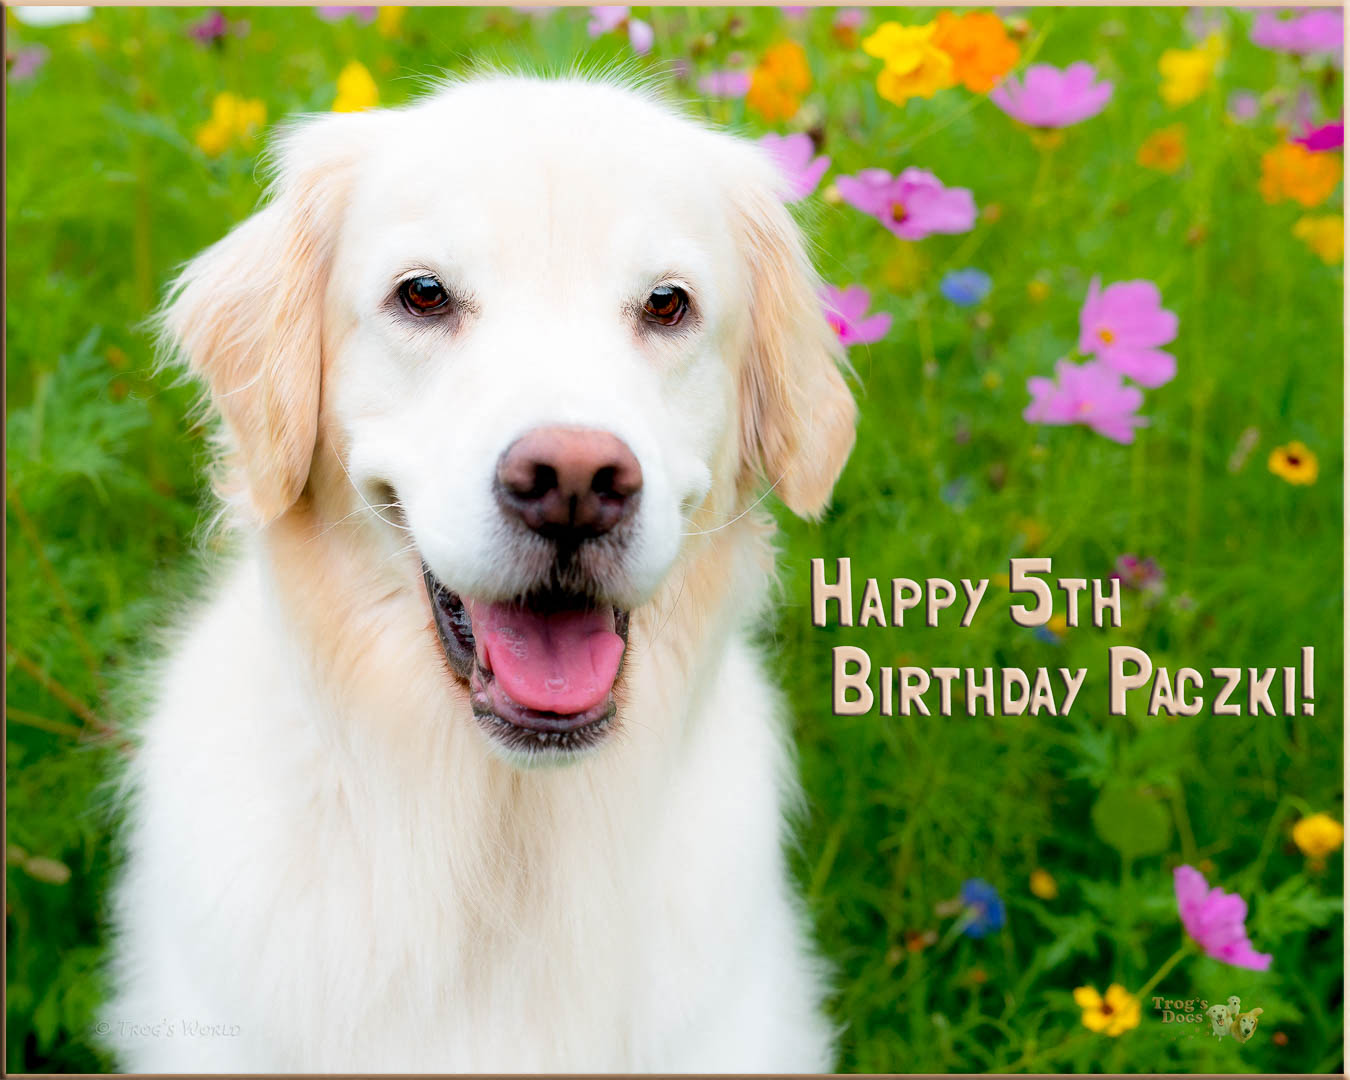 Happy 5th Birthday Paczki!